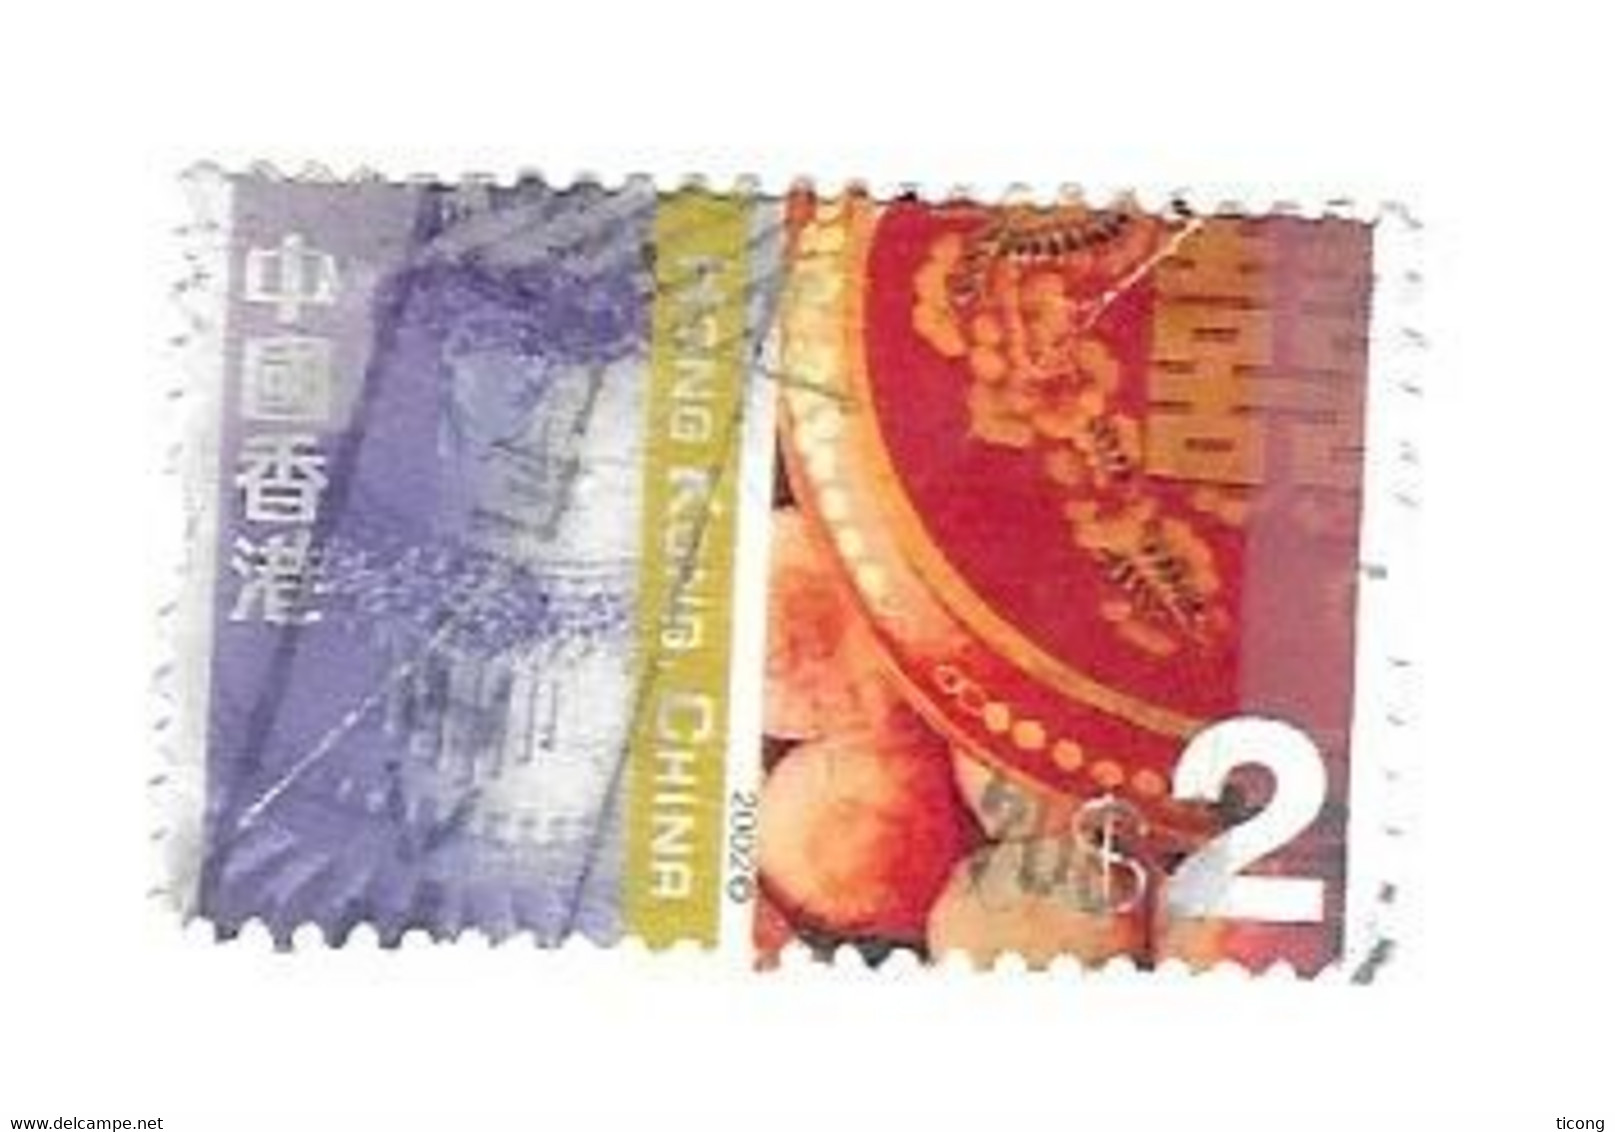 GATEAUX EUROPEEN ET CHINOIS  - TIMBRE DE CHINE  HONG KONG DE 2002, VOIR LE SCANNER - Used Stamps